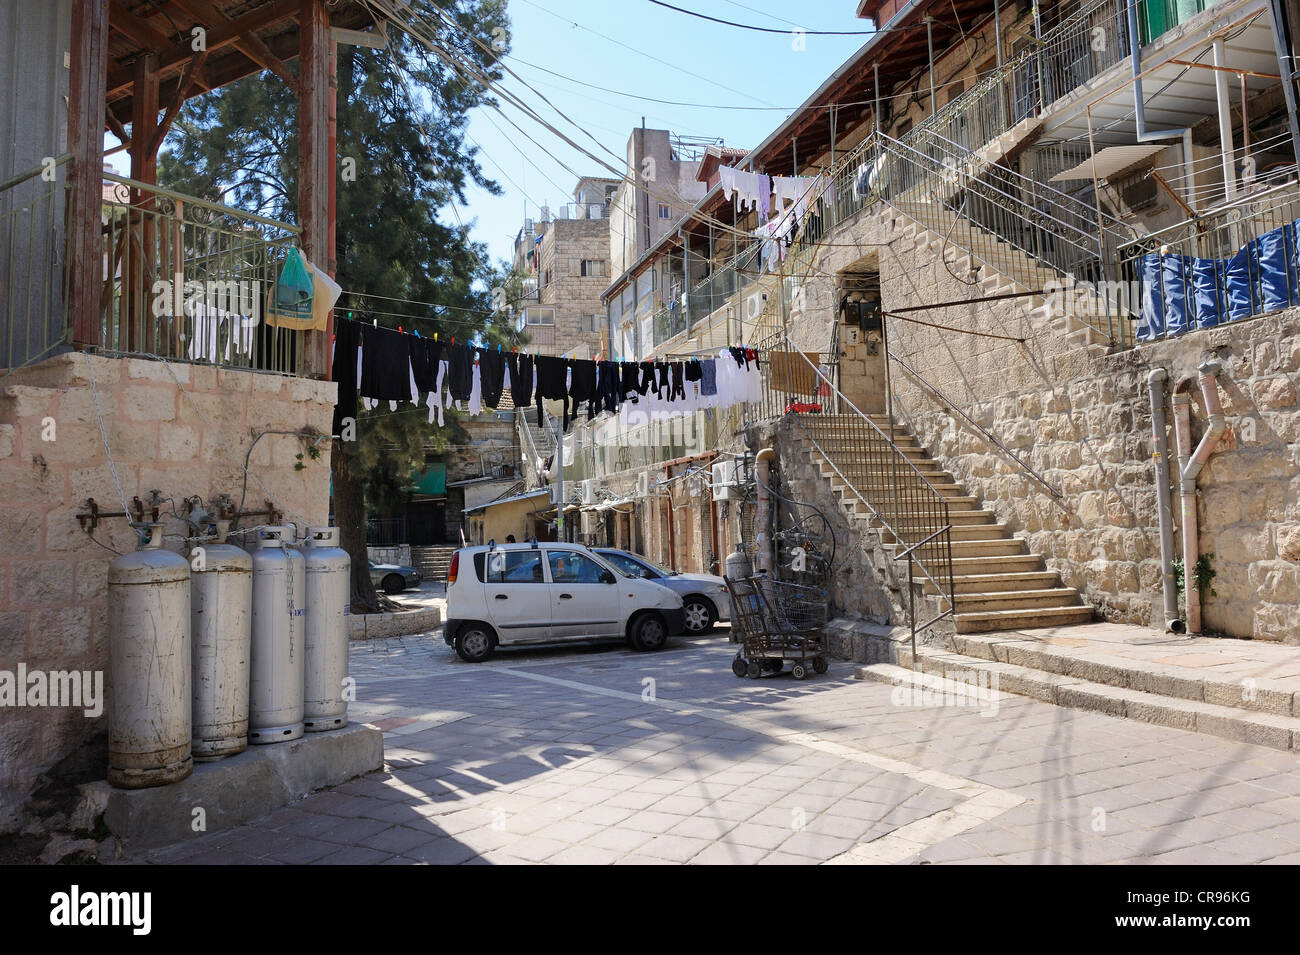 Ben mantenuti del quartiere residenziale con tipiche case nel distretto di Me'a she'arim o Mea Shearim, Gerusalemme, Israele Foto Stock